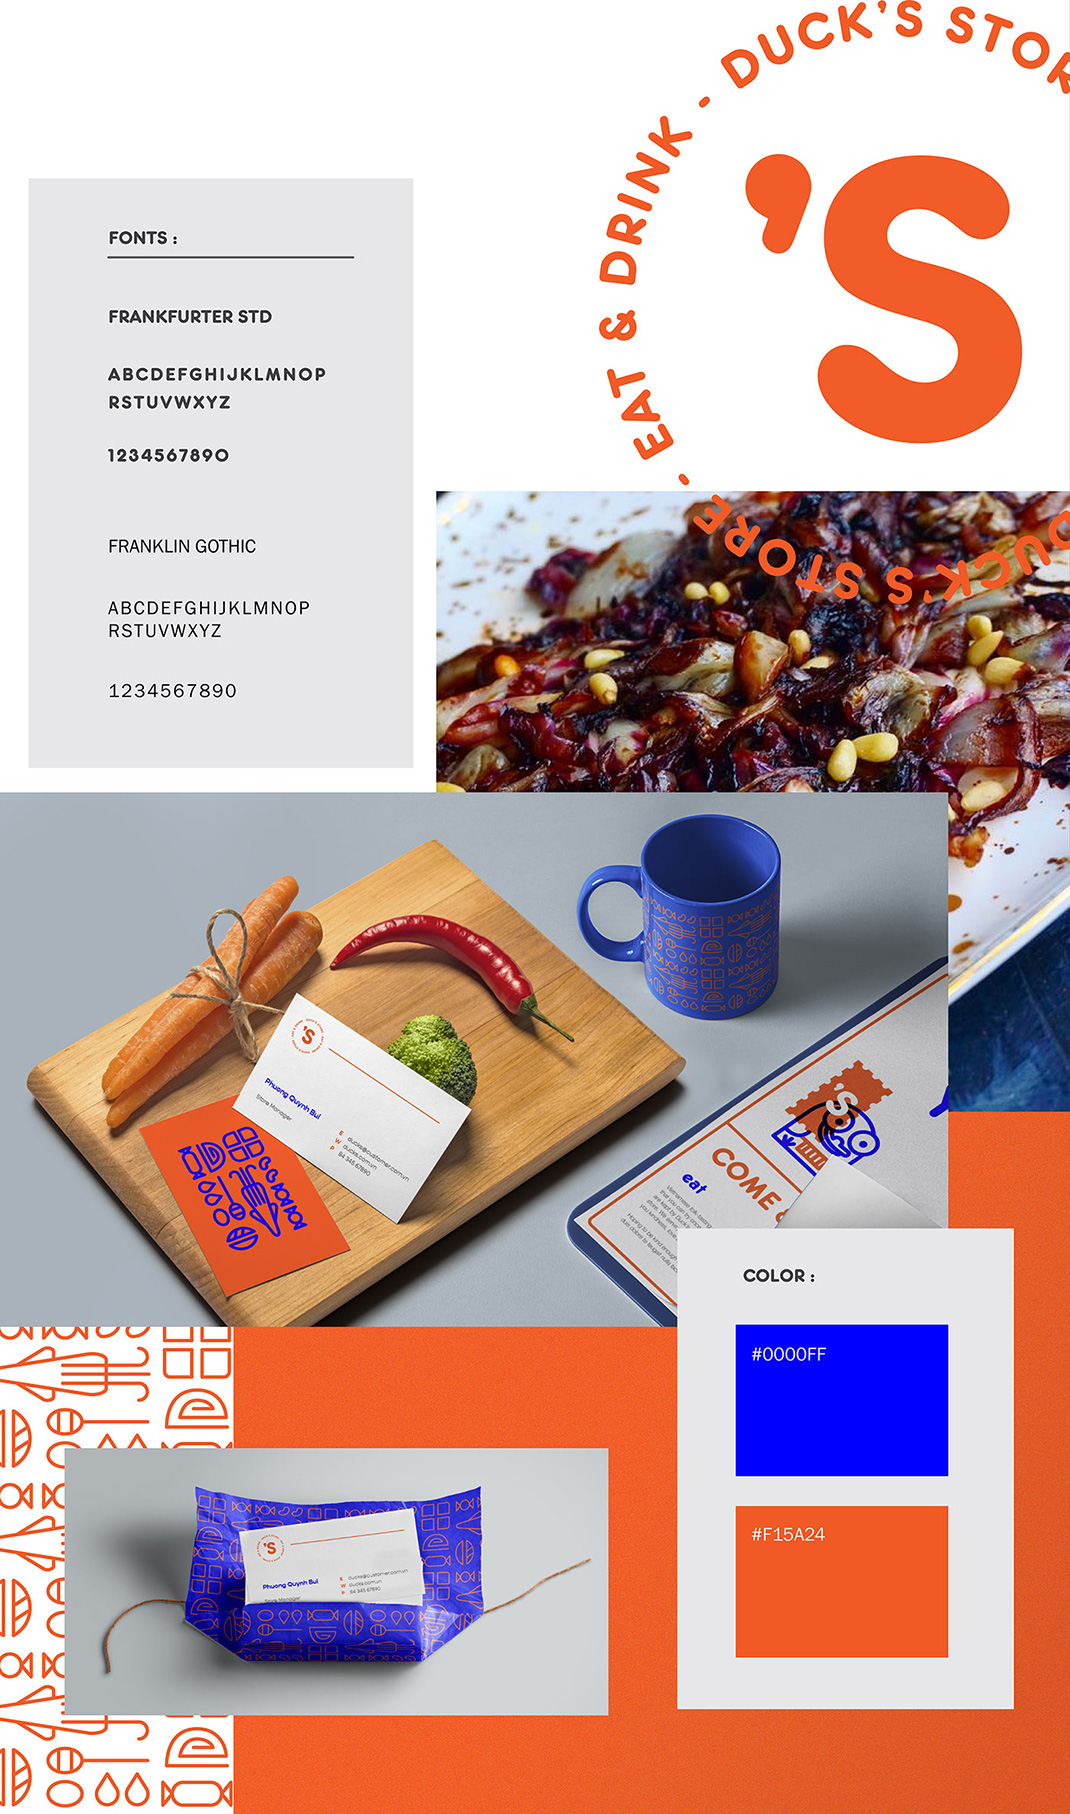 鸭店品牌形象vi设计 越南 插图 鸭子 logo设计 vi设计 空间设计 视觉餐饮